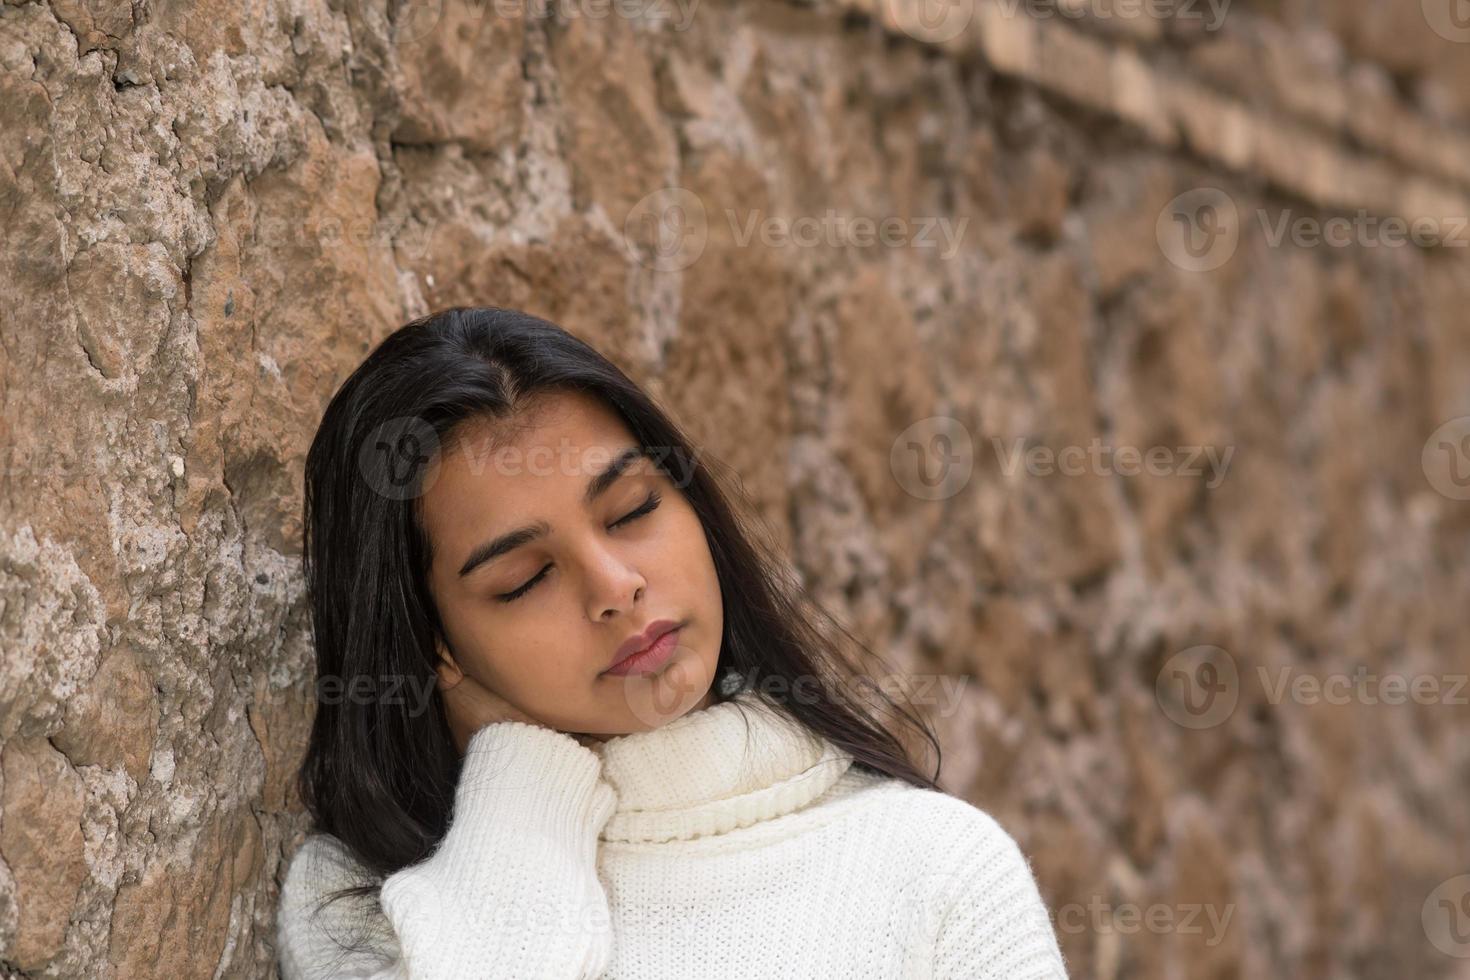 dolore al collo o rigidità giovane donna bruna chiudendo gli occhi massaggiandosi il collo sofferente foto